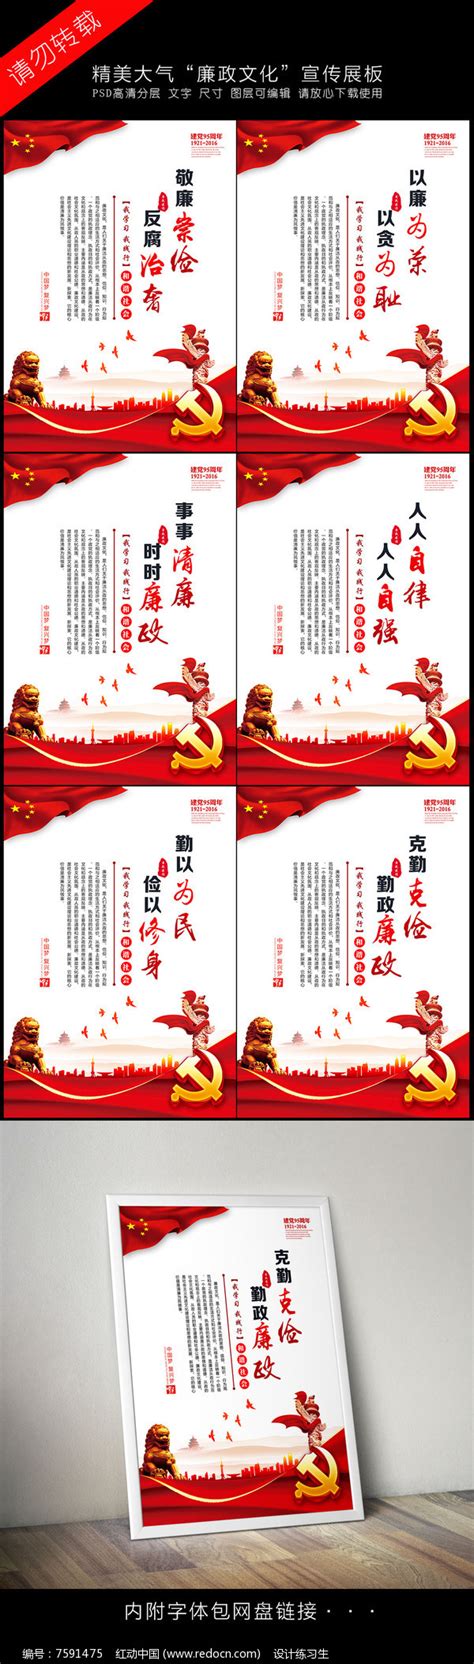 2016最新党风廉政文化建设展板图片下载_红动中国